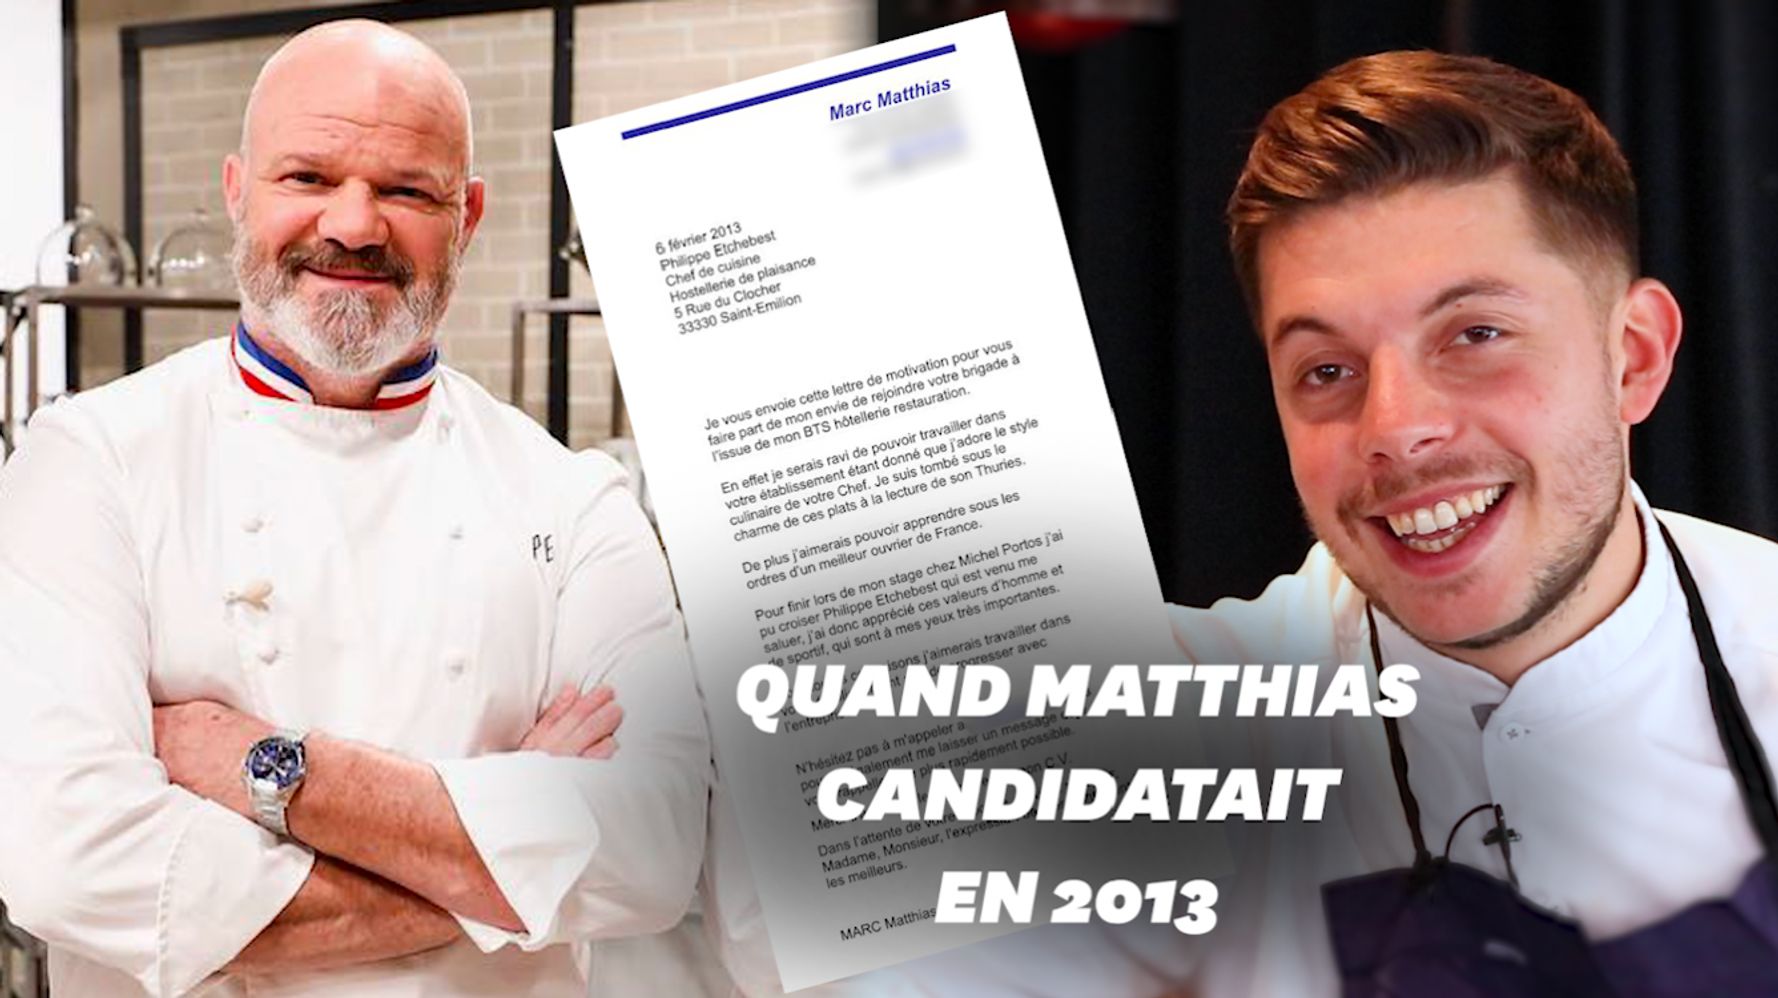 Top Chef La Lettre De Matthias Marc A Philippe Etchebest 8 Ans Avant L Emission Le Huffpost